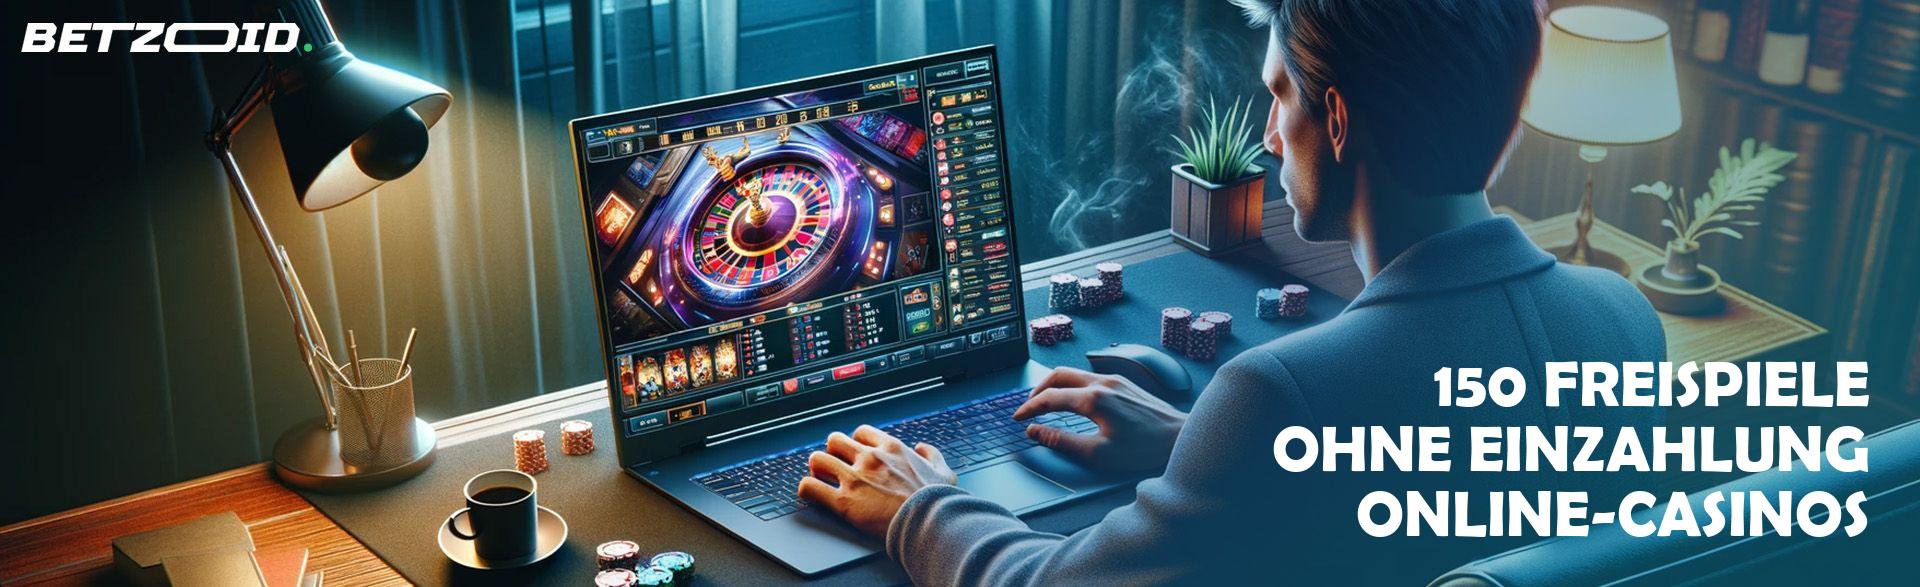 Das Geheimnis eines erfolgreichen neue casinos bonus